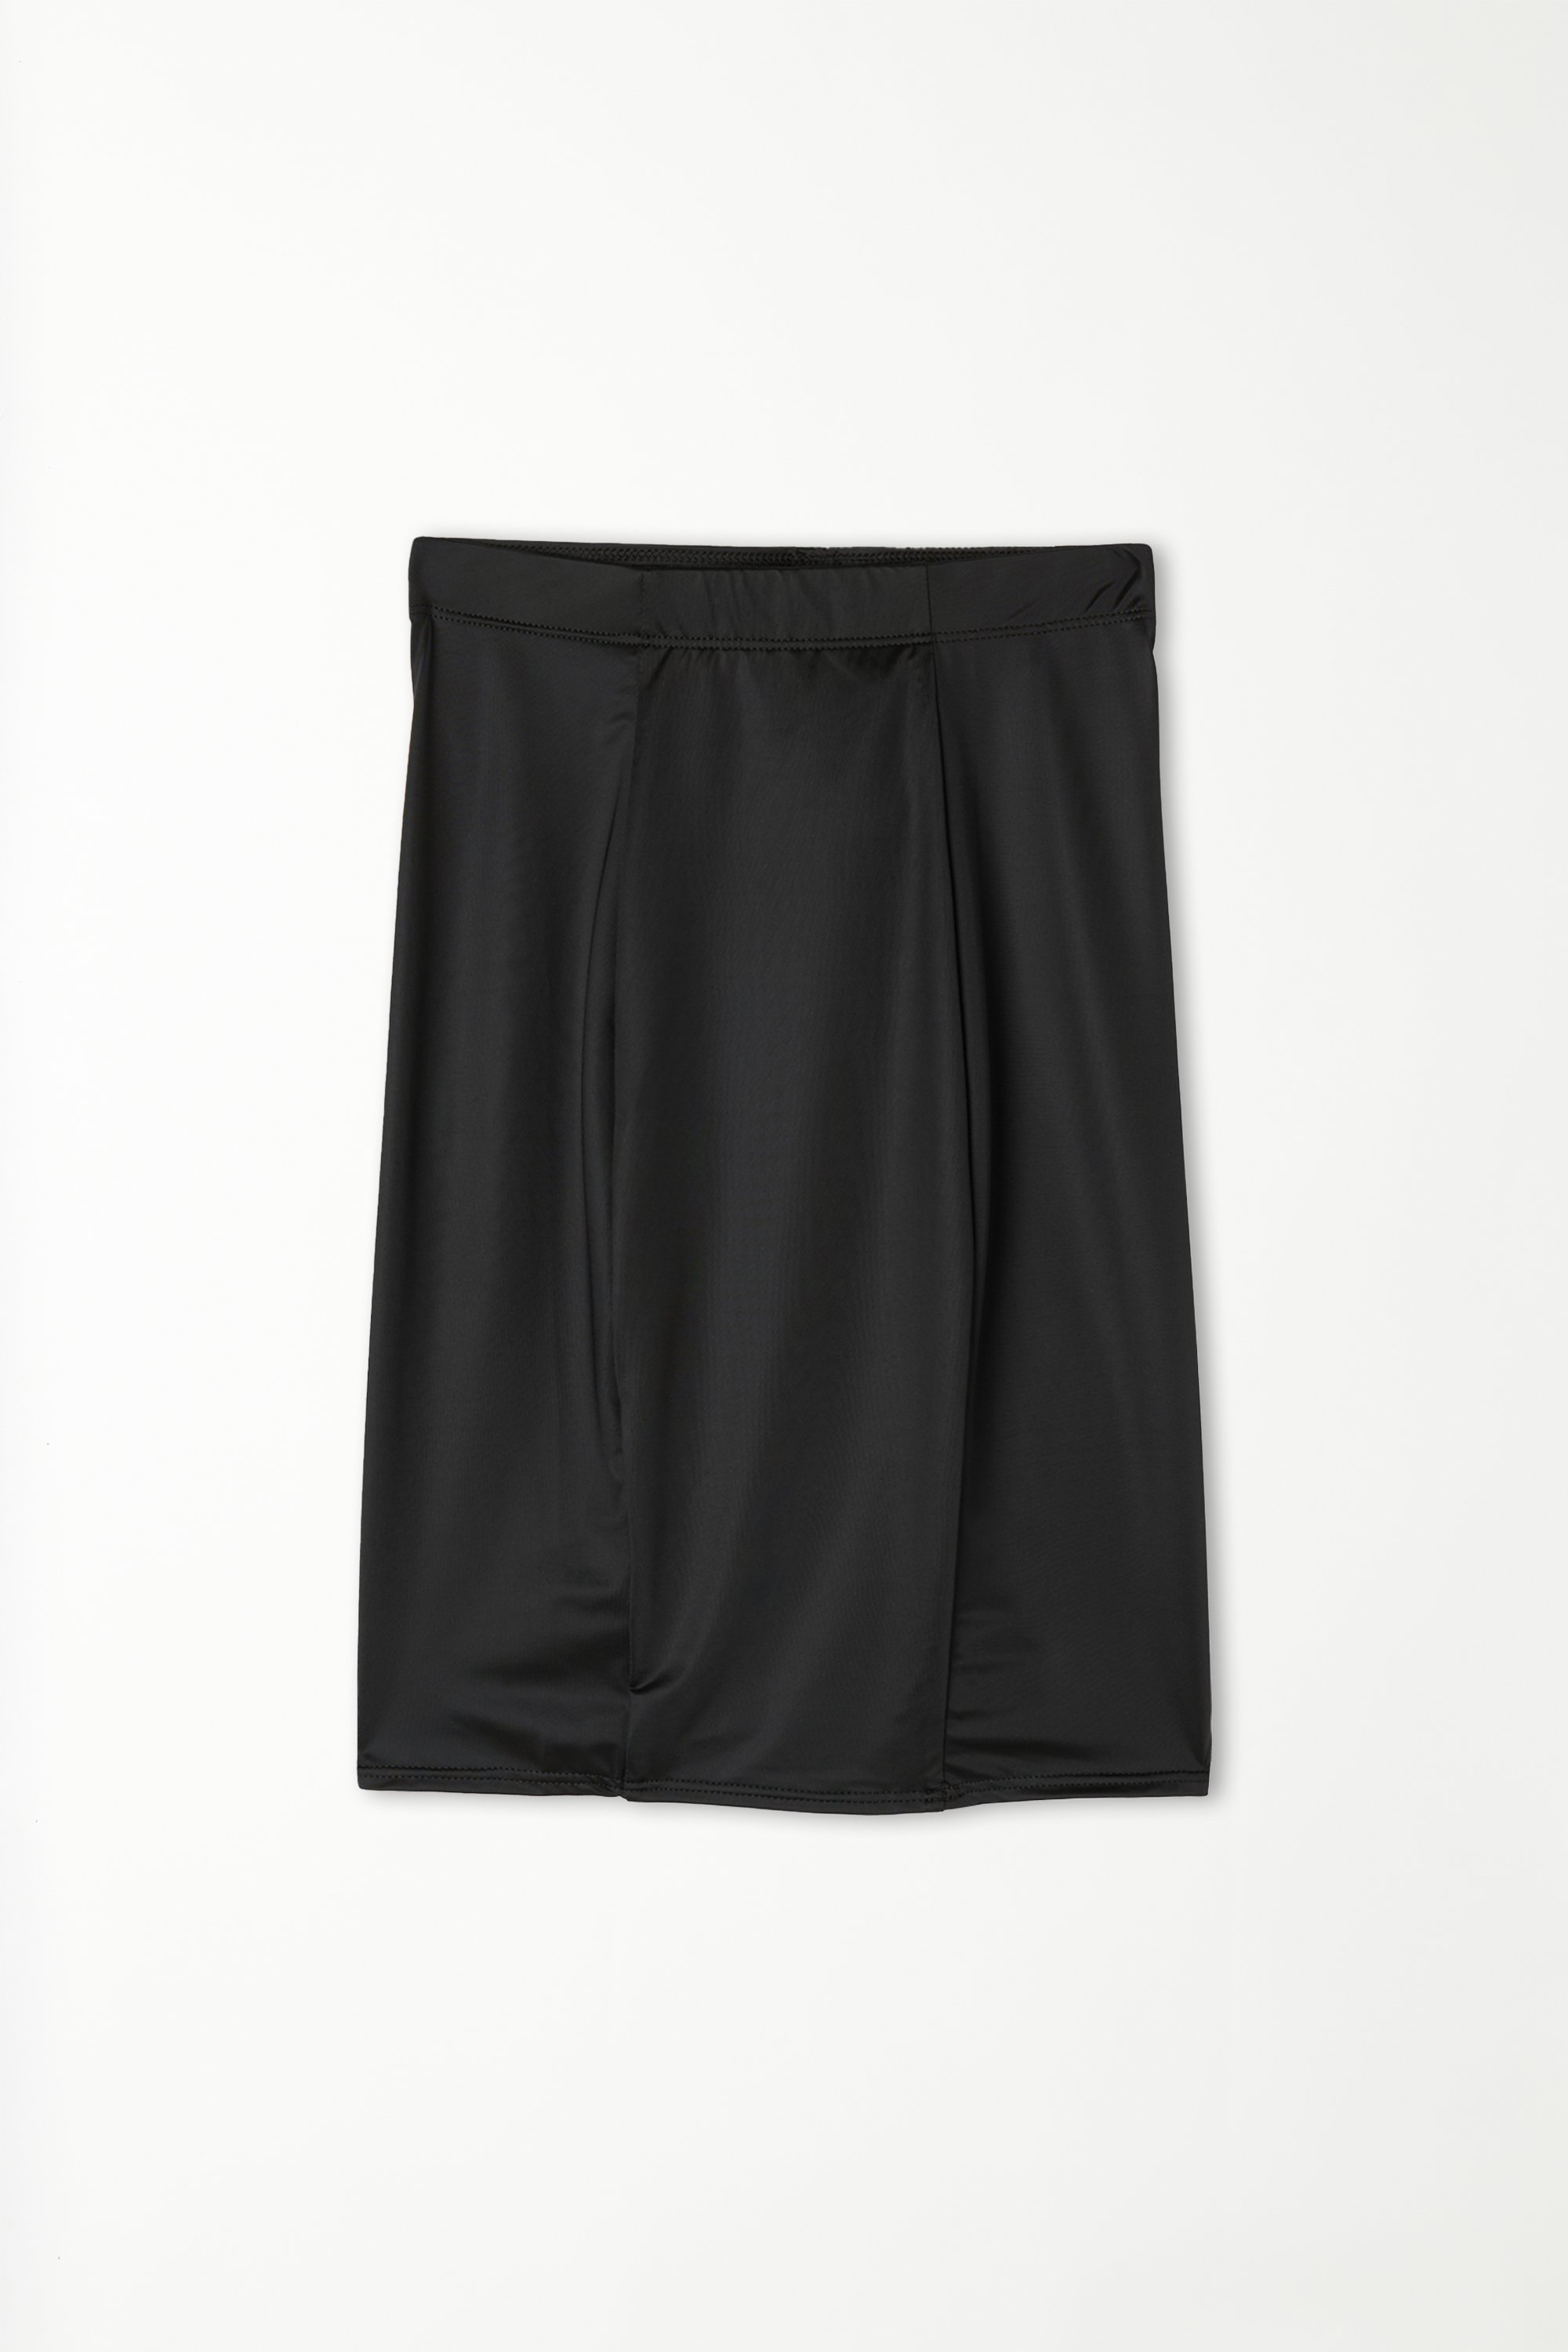 Ultralight Shaping High-Waist Underskirt